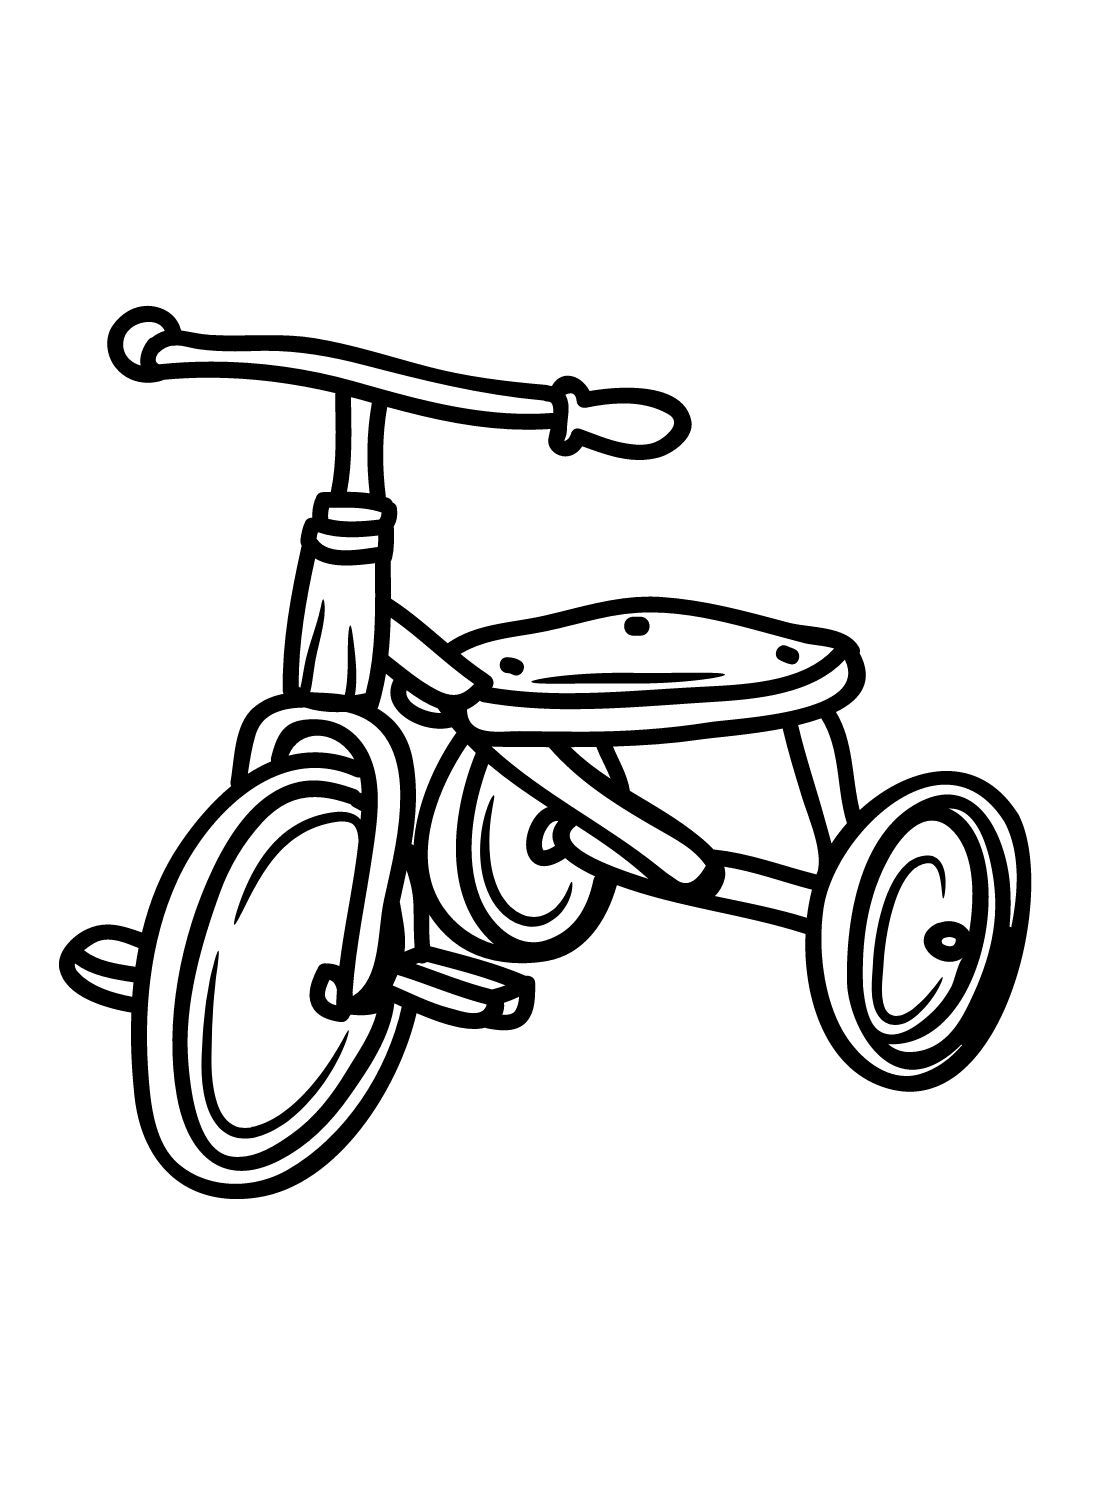 Bicicleta para crianças from Bicicleta